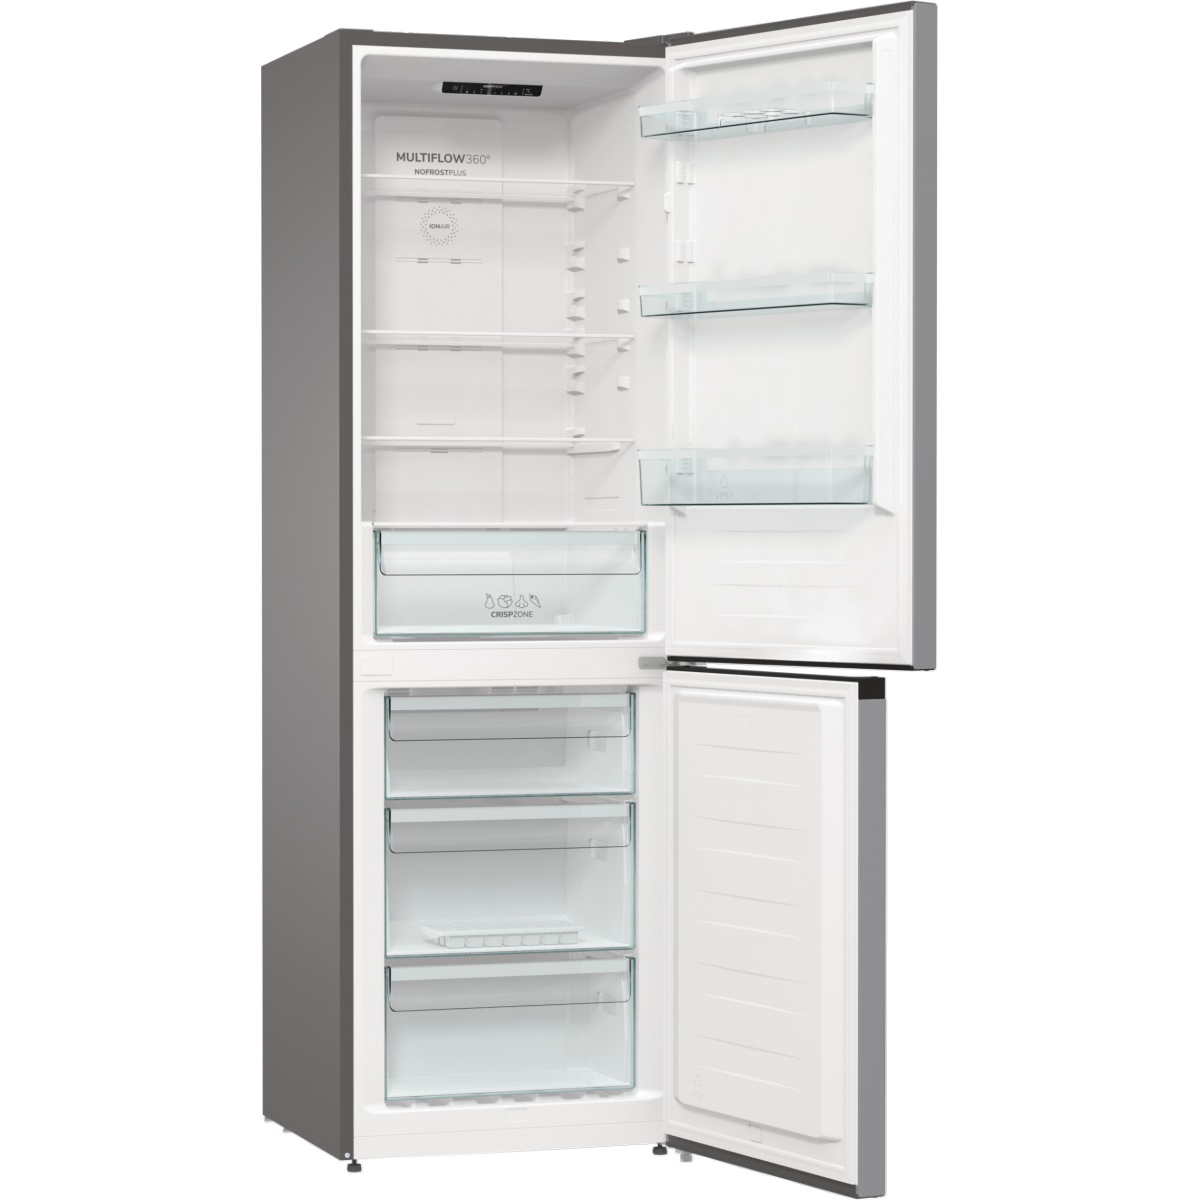 Холодильник Gorenje NRK6191ES4 (Essential / Объем - 302 л / Высота - 185см / A+ / Серебристый / No Frost)